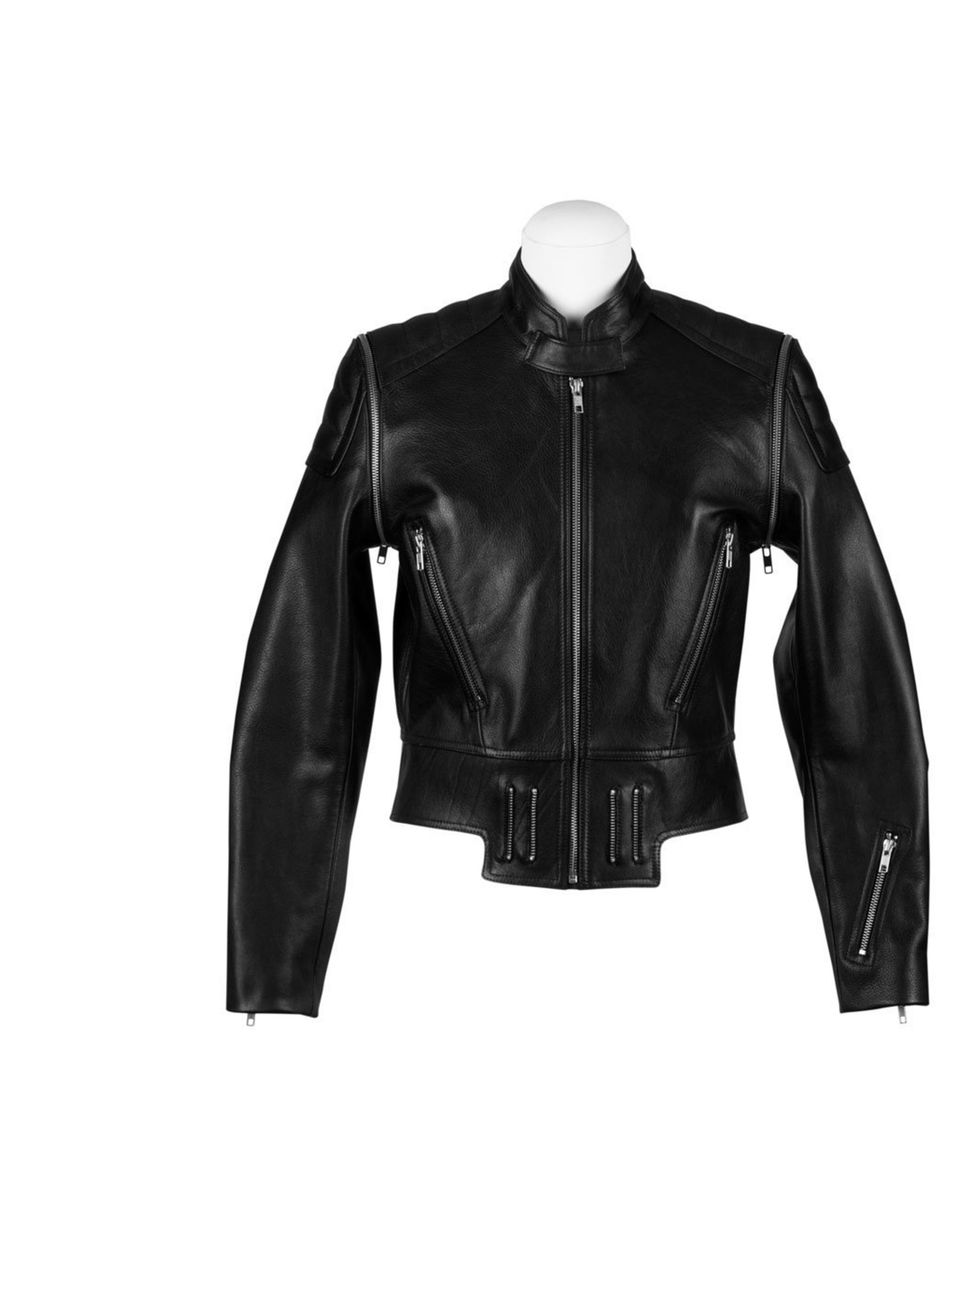 <p><a href="http://www.stories.com/Ready-to-wear/Jackets_Coats/Leather_biker_jacket/582949-549274.1">Biker jacket</a>, £195</p>